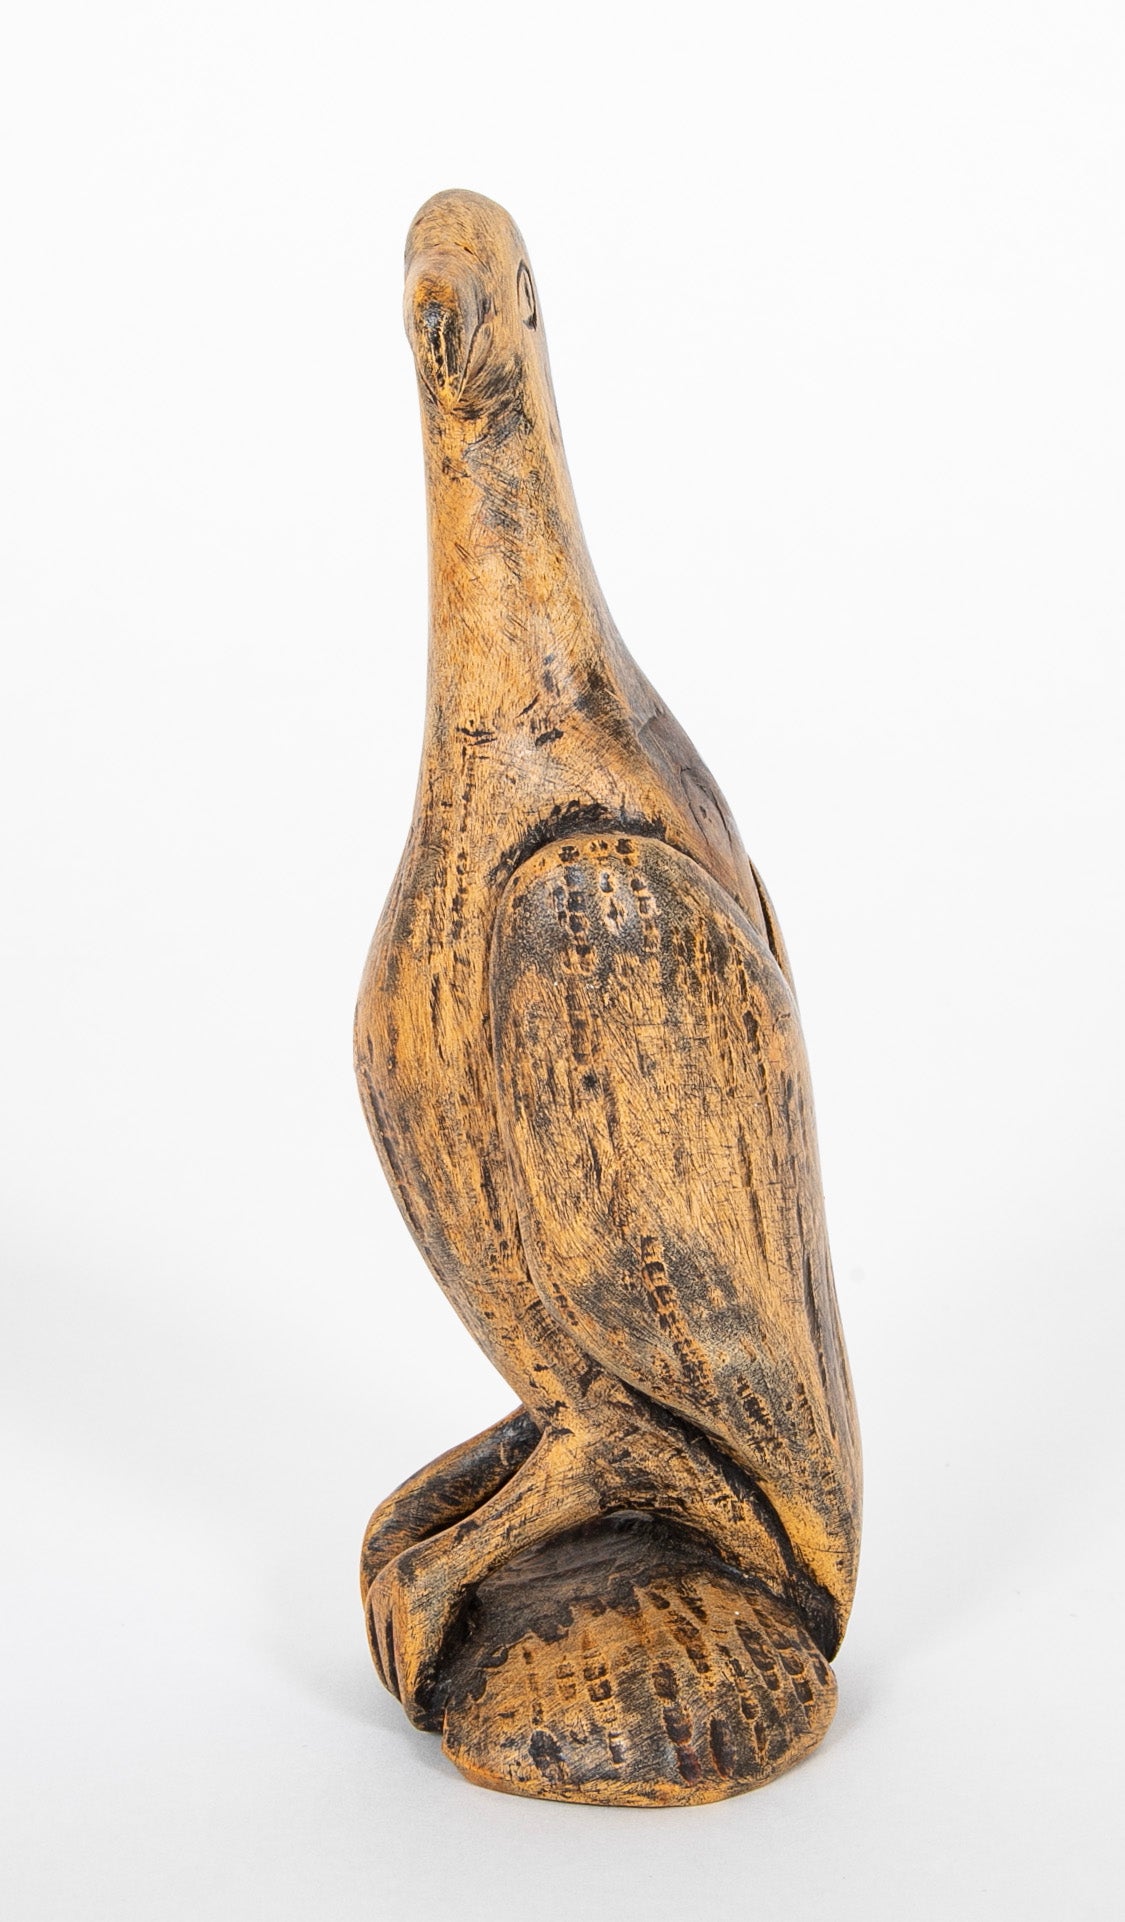 Carved Wooden Primitive Bird